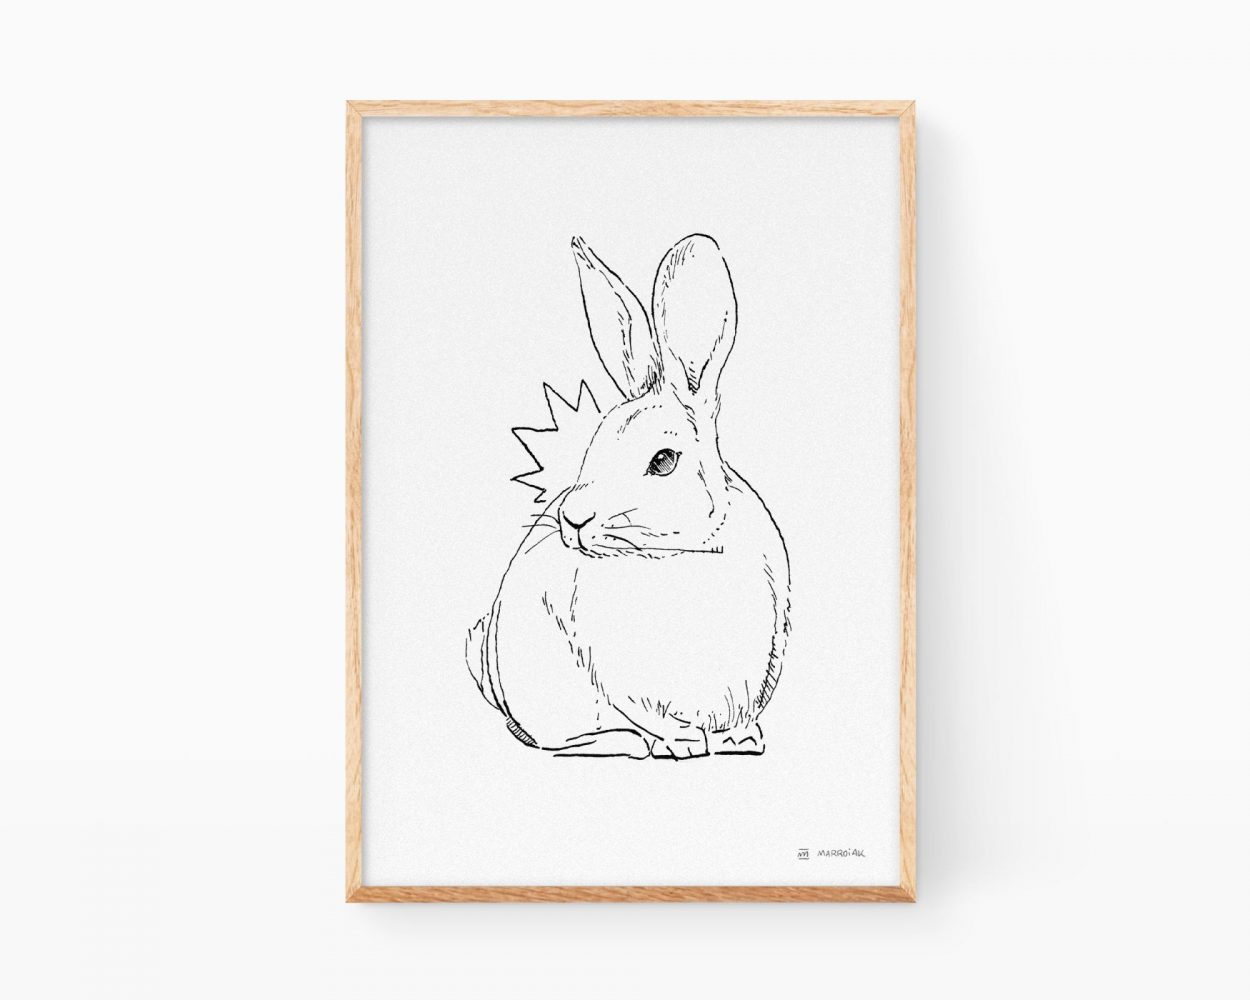 Láminas de animales de la península ibérica: ilustración en blanco y negro de un conejo dibujado a tinta. Decoración para biólogos.